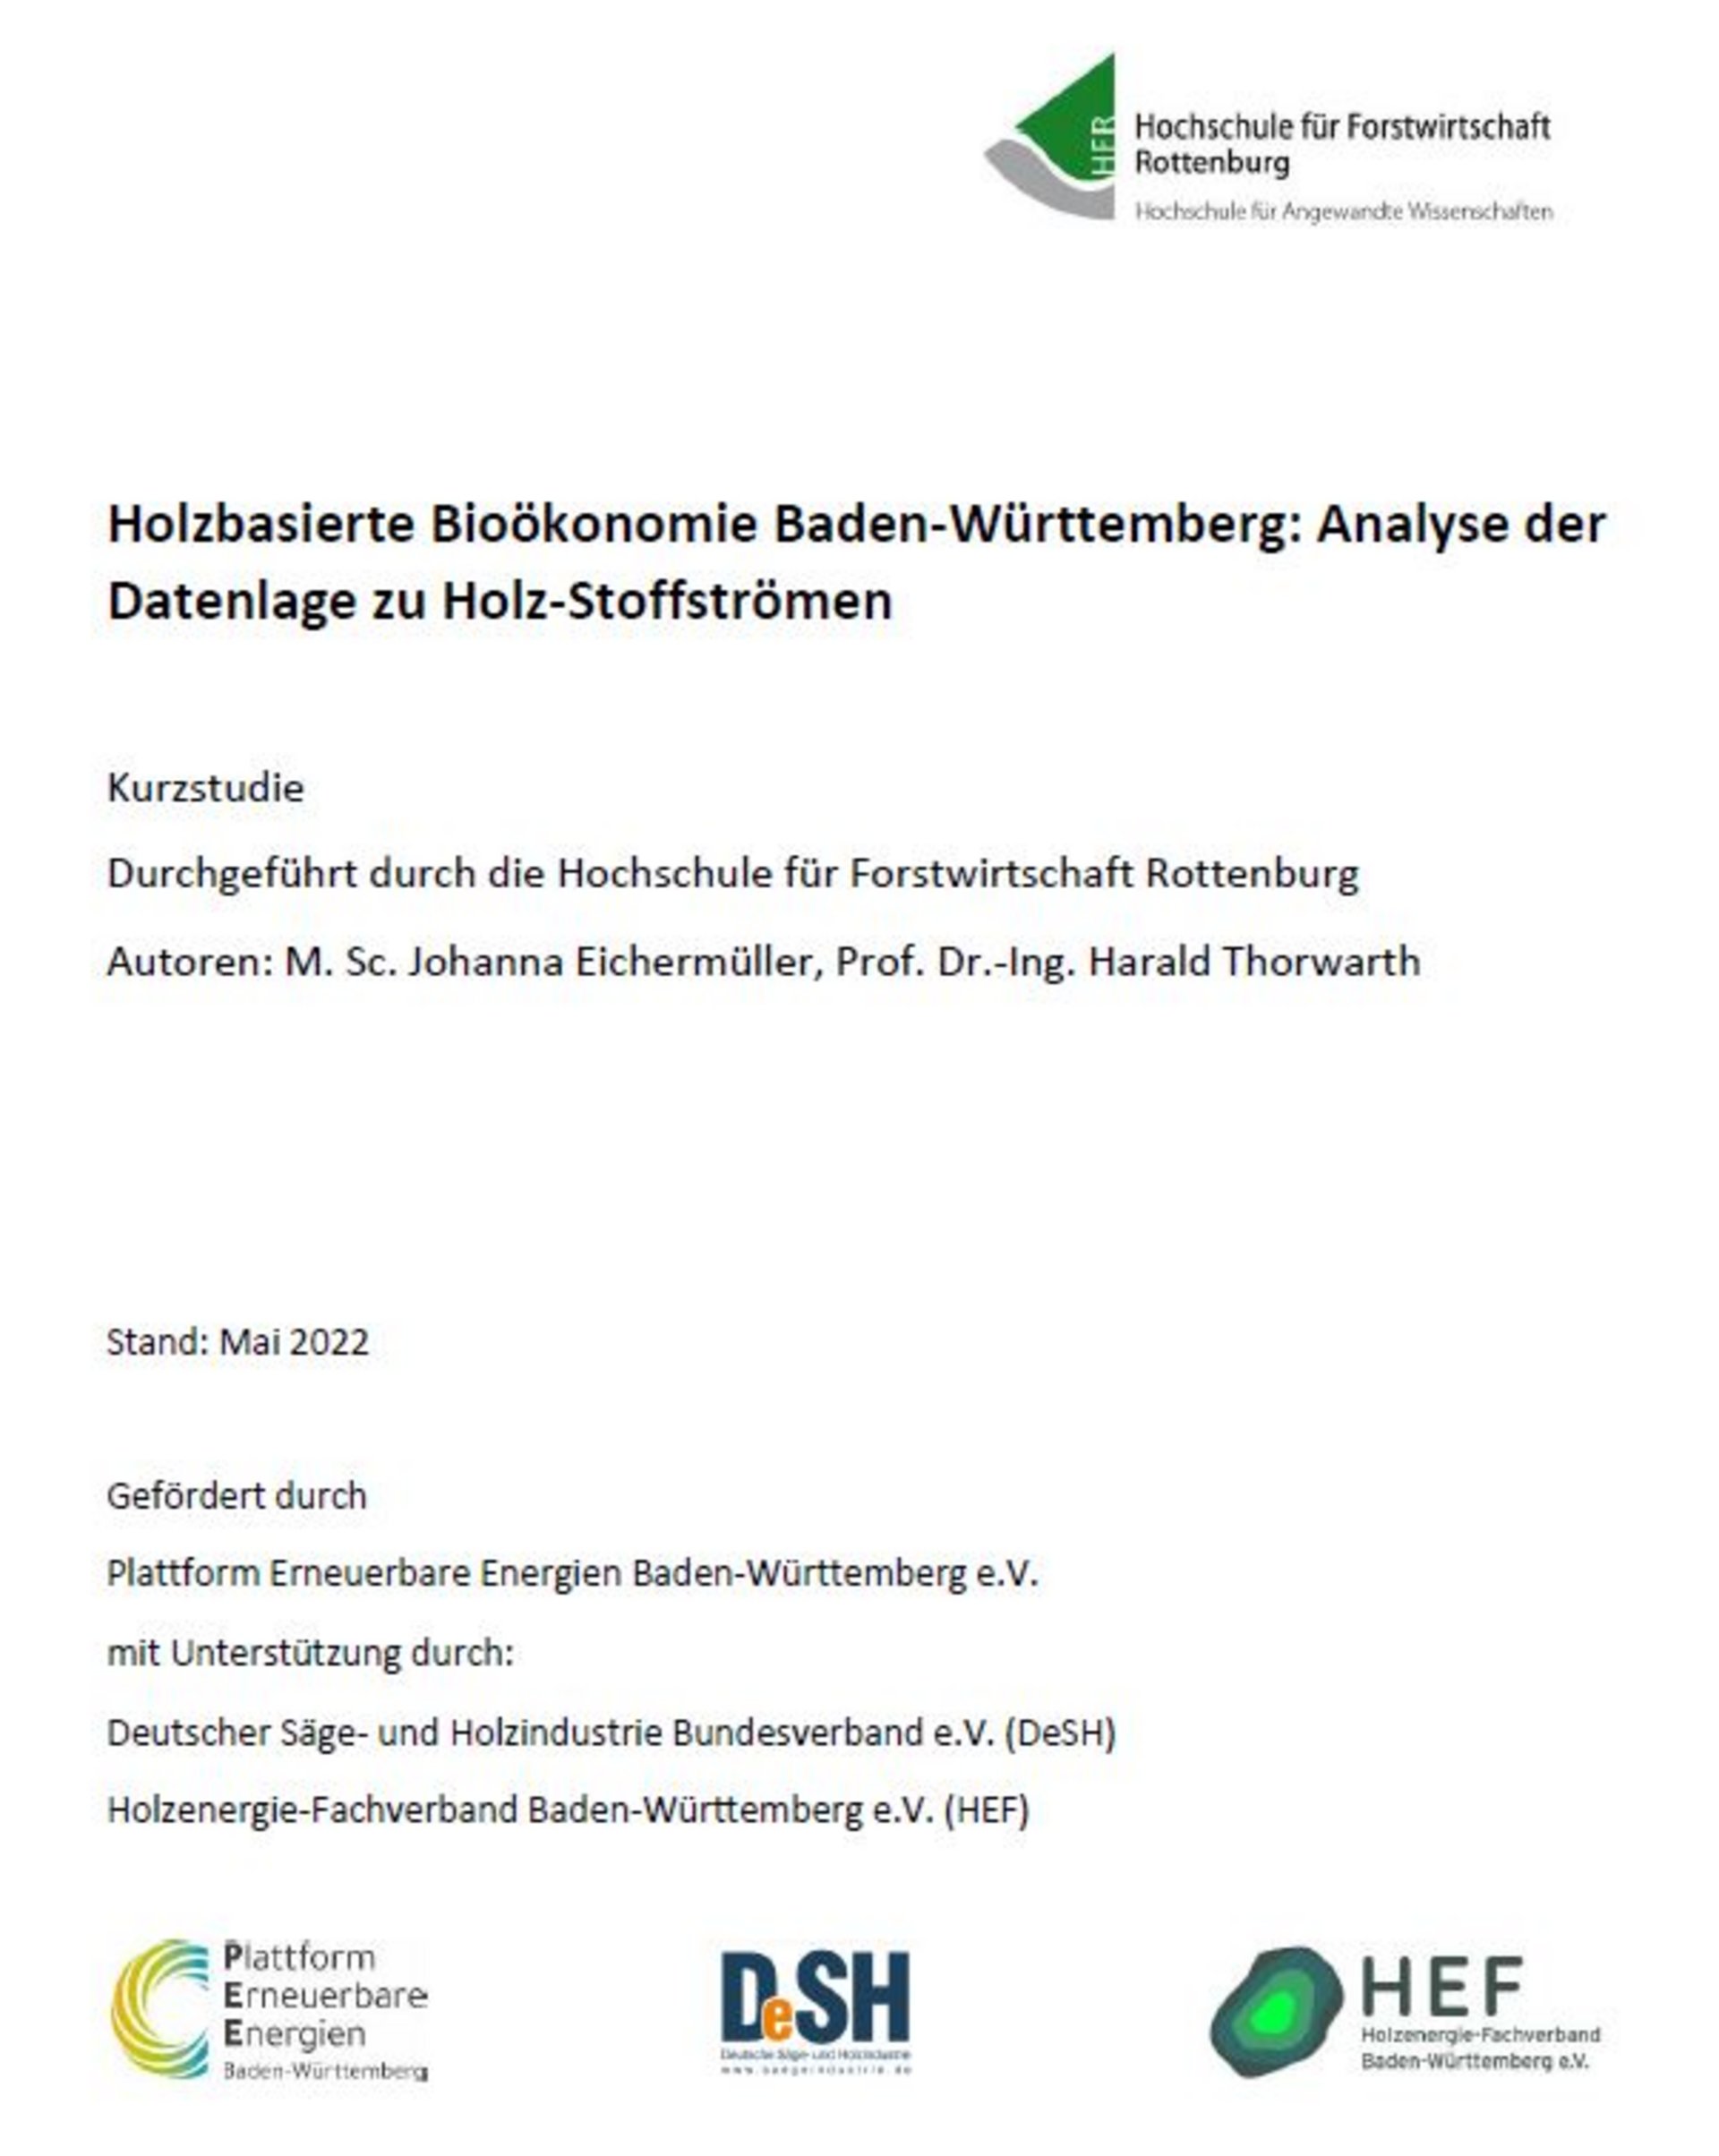 Studie: Holzbasierte Bioökonomie in Baden-Württemberg